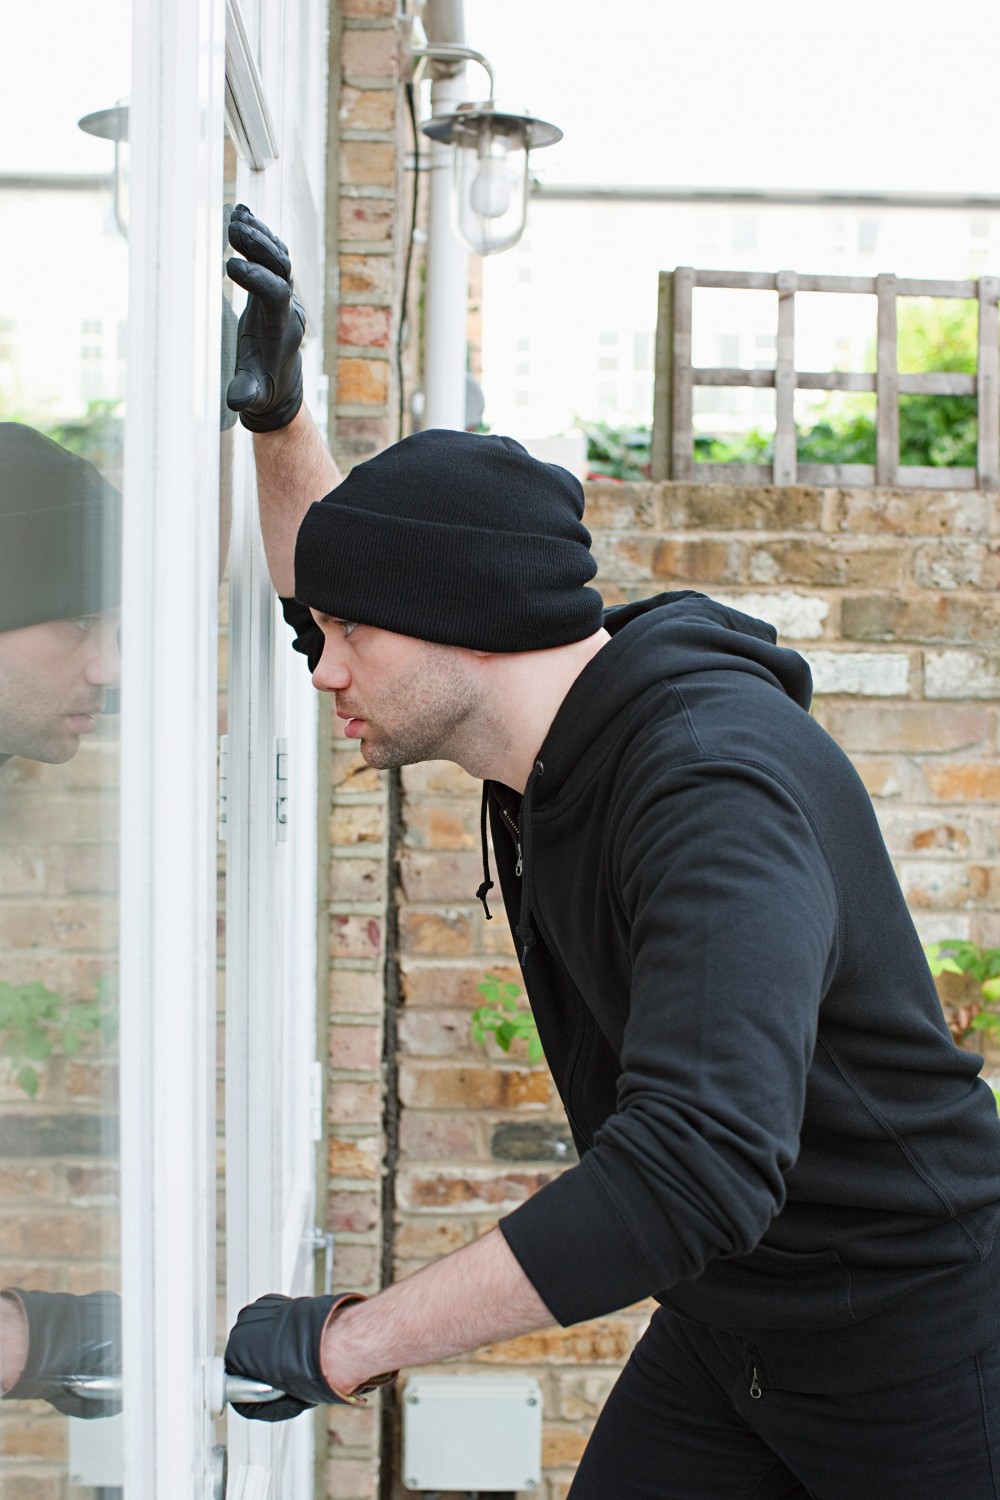 Rund ums Haus Jetzt nachrüsten! - Einbruchhemmende Fensterbeschläge von Winkhaus schützen das Hab und Gut - News, Bild 1